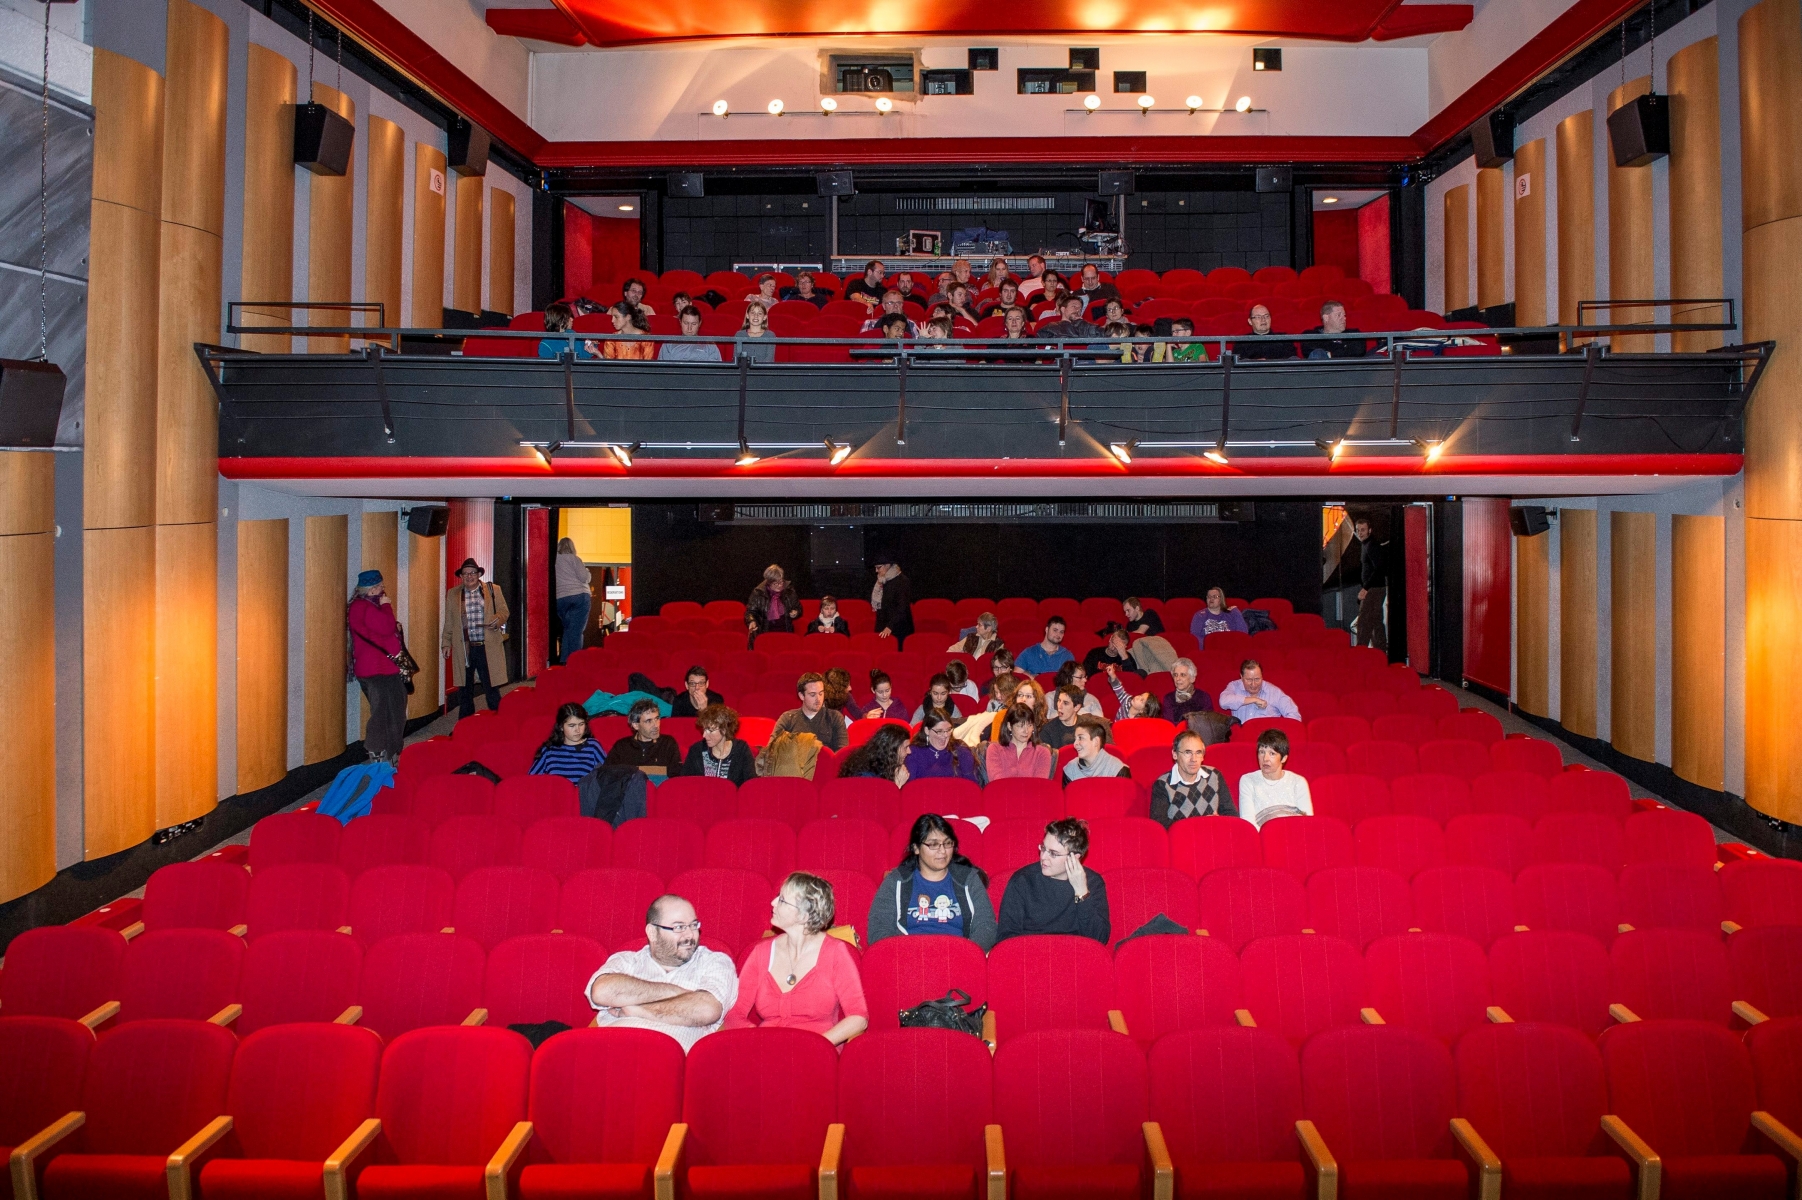 Premiere fete du Cinema du Locle au Casino



Le Locle, le 11.01.15, Photo : Lucas Vuitel CASINO DU LOCLE